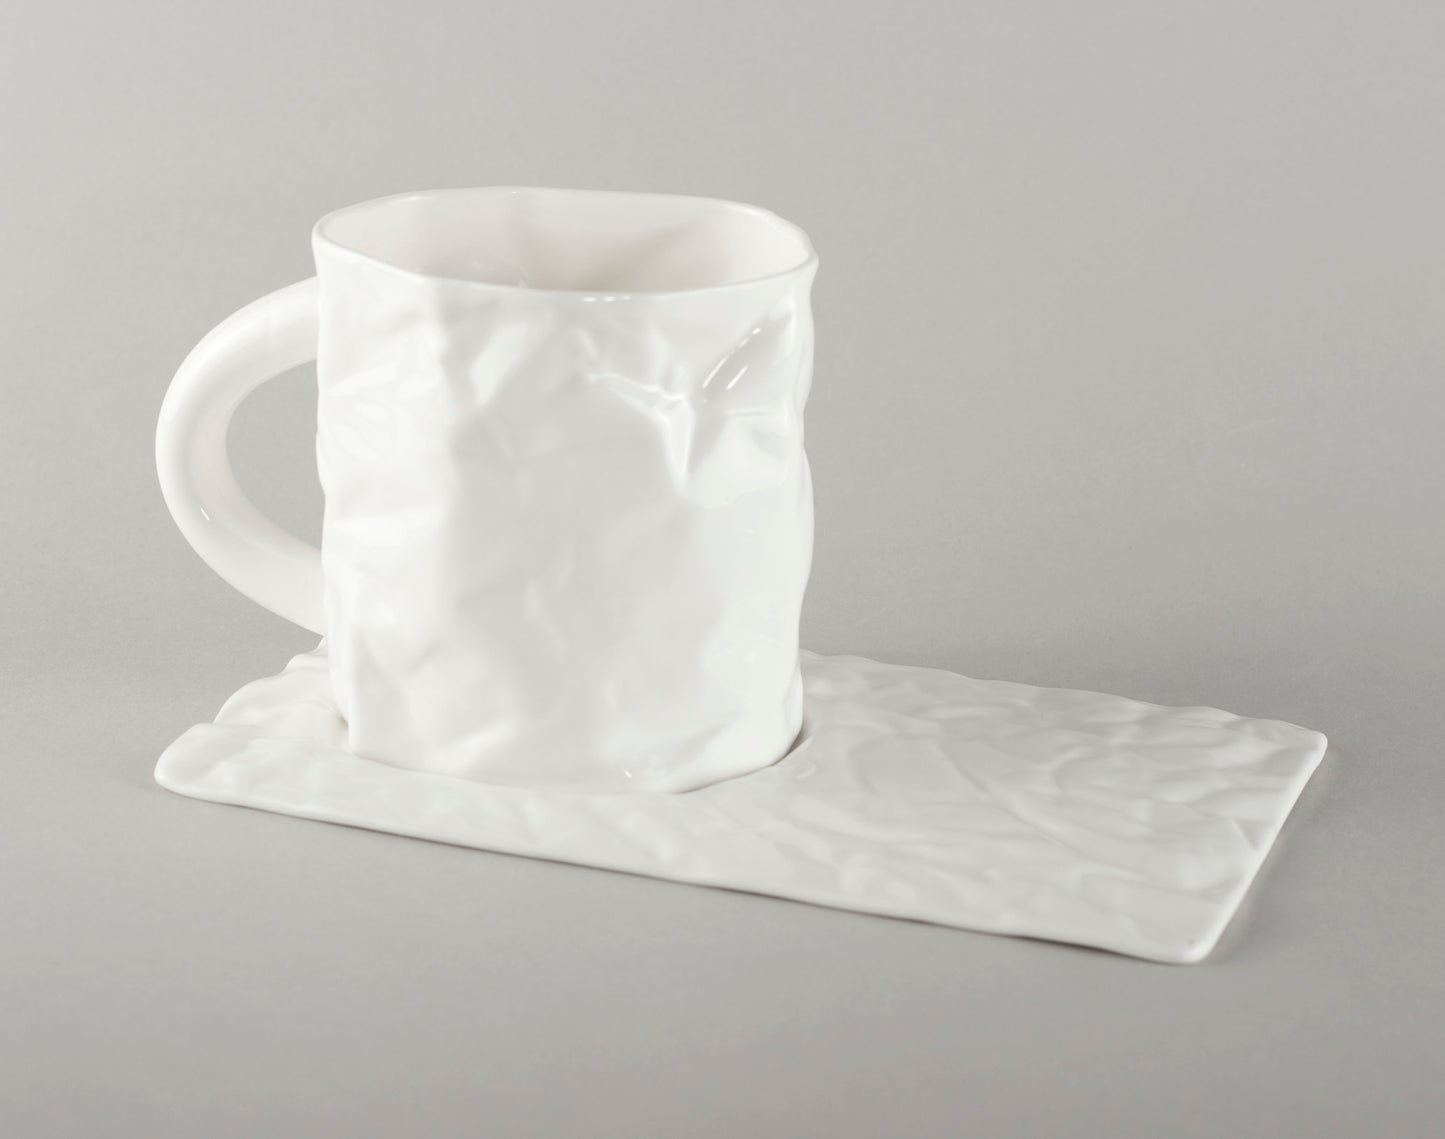 Porcelāna burzīta apakštase tējas krūzei (krūze nav iekļauta)